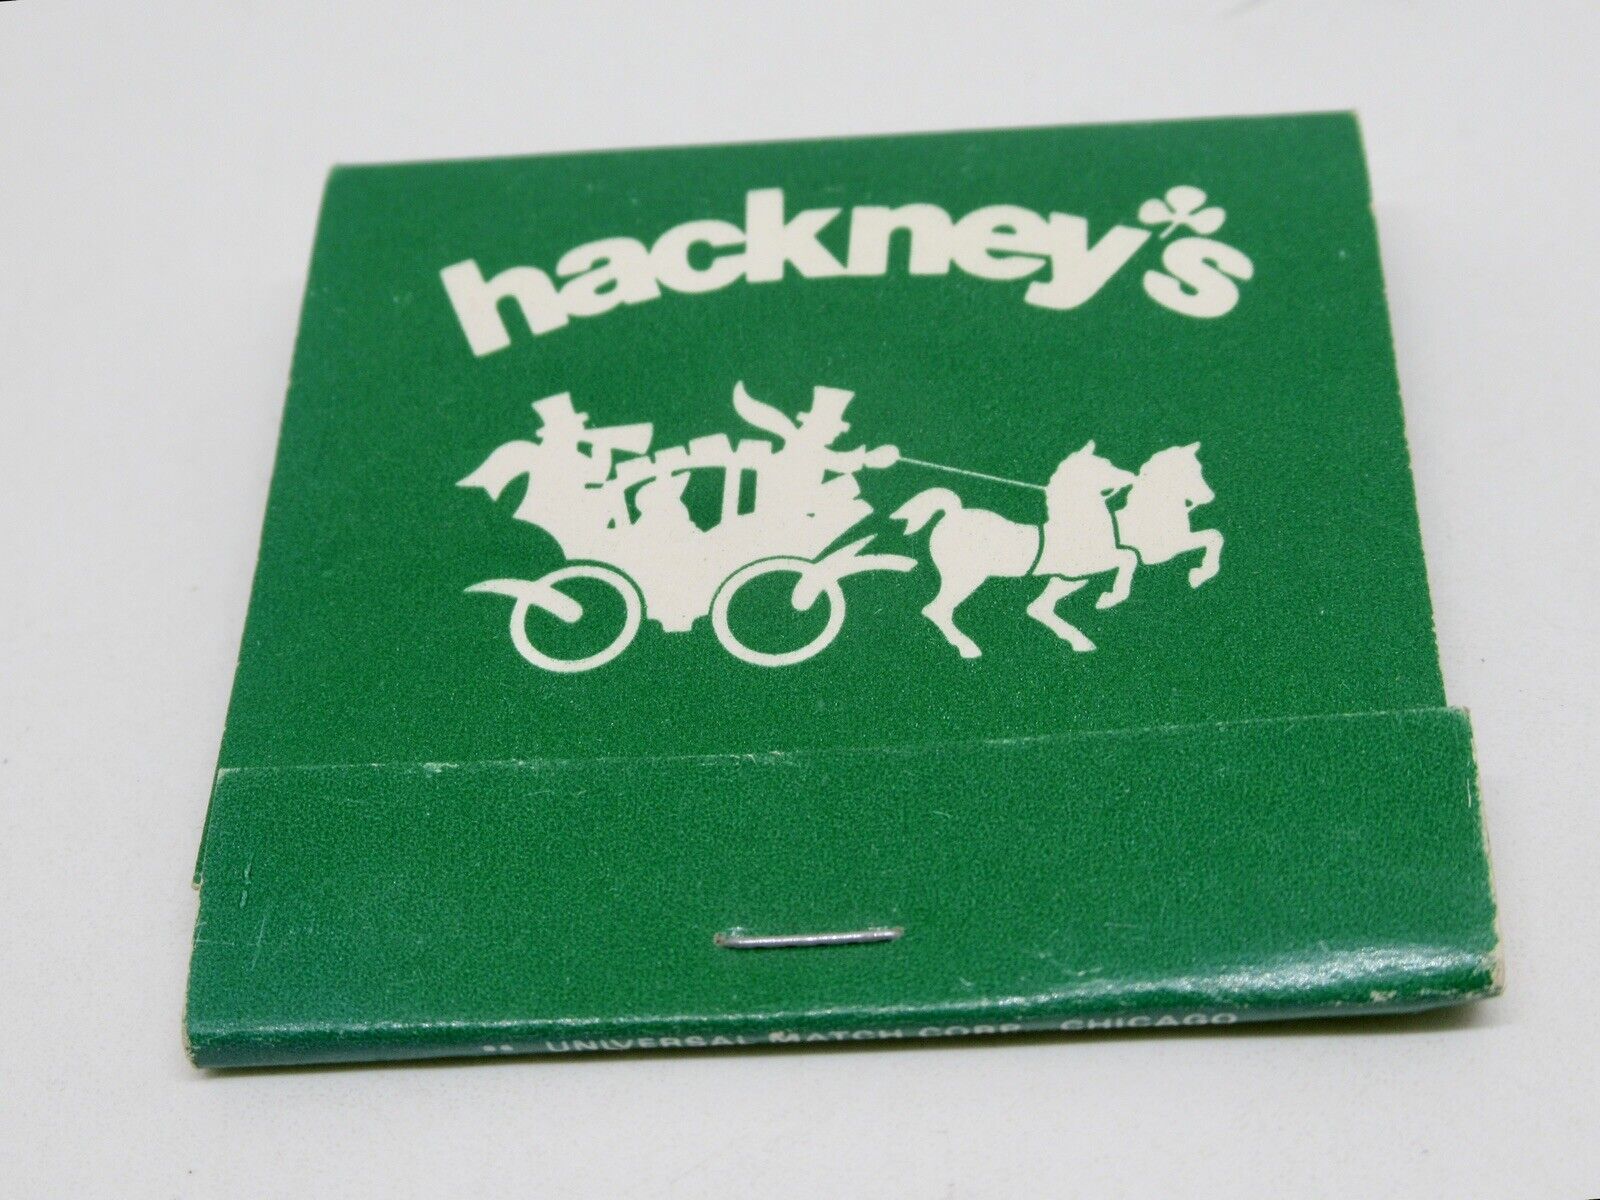 Hackney's Restaurant CHICAGO Harms Glenview Illinois FULL Matchbook